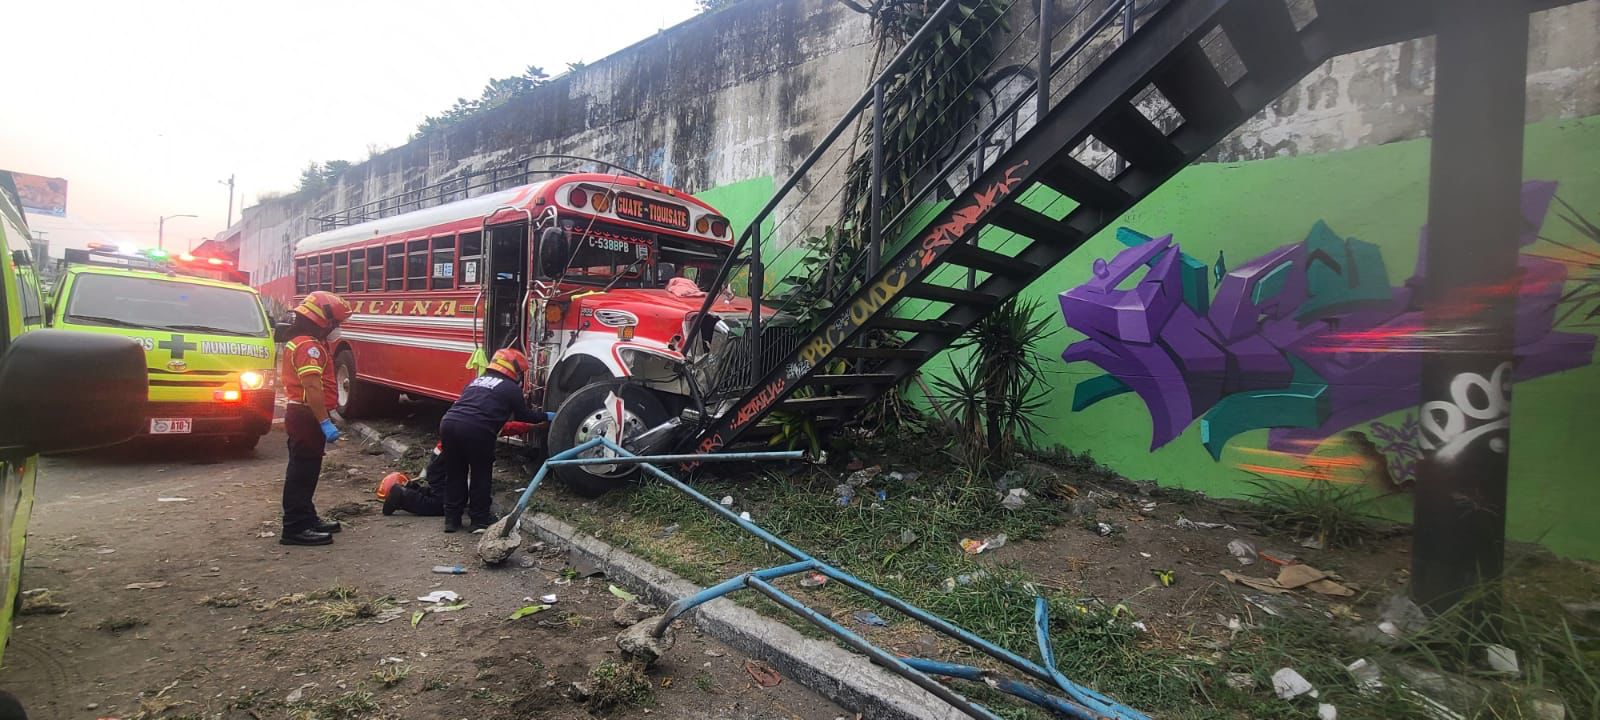 El accidente ocurrió en la calzada Raúl Aguilar Batres y 51 calle, de la zona 11 de Villa Nueva. (Foto Prensa Libre: PMT Ciudad de Guatemala)